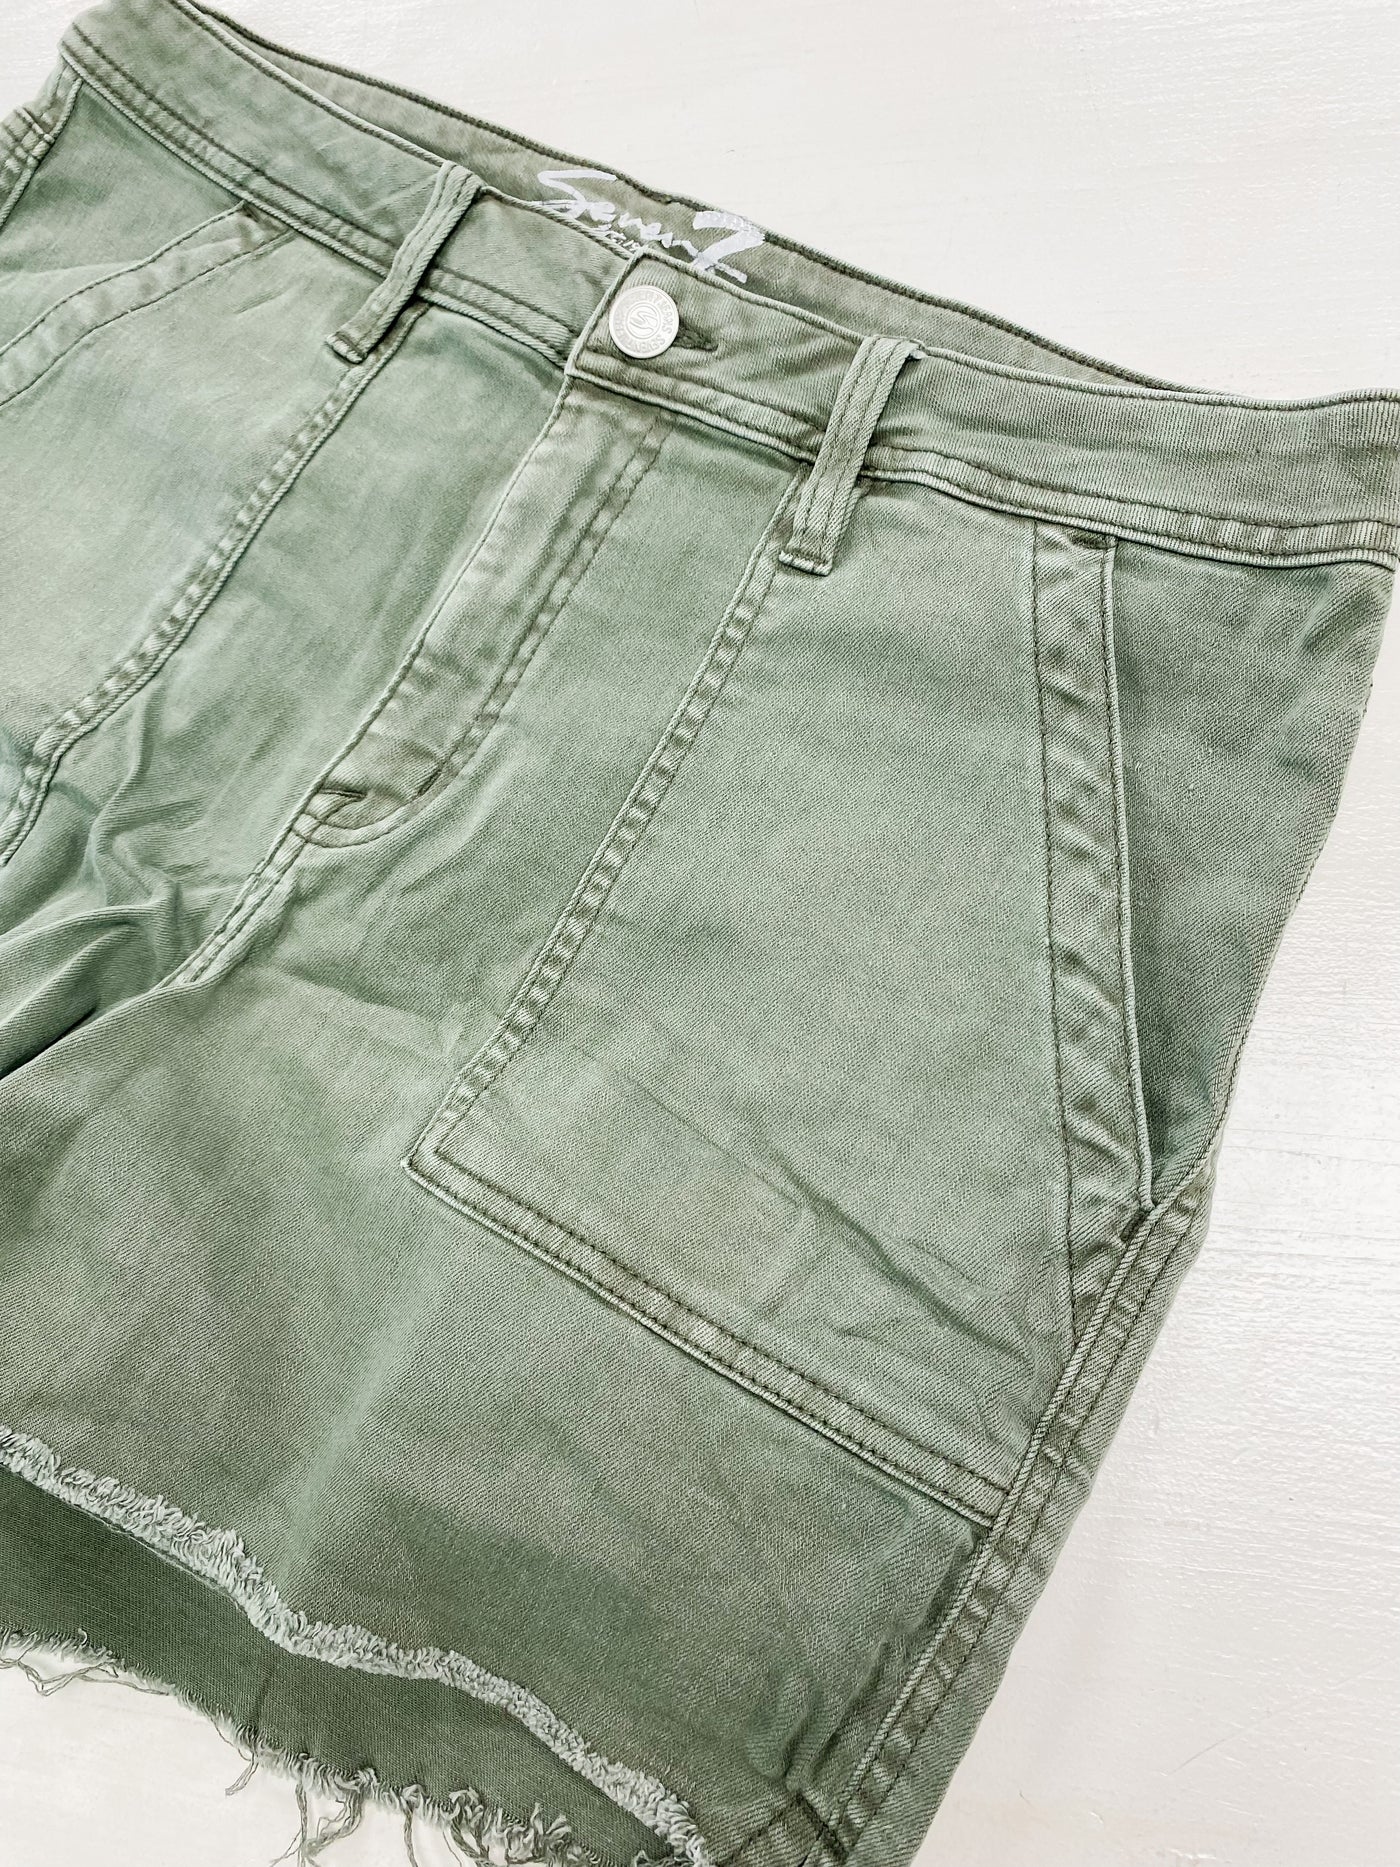 Seven Jeans Olive Denim Shorts